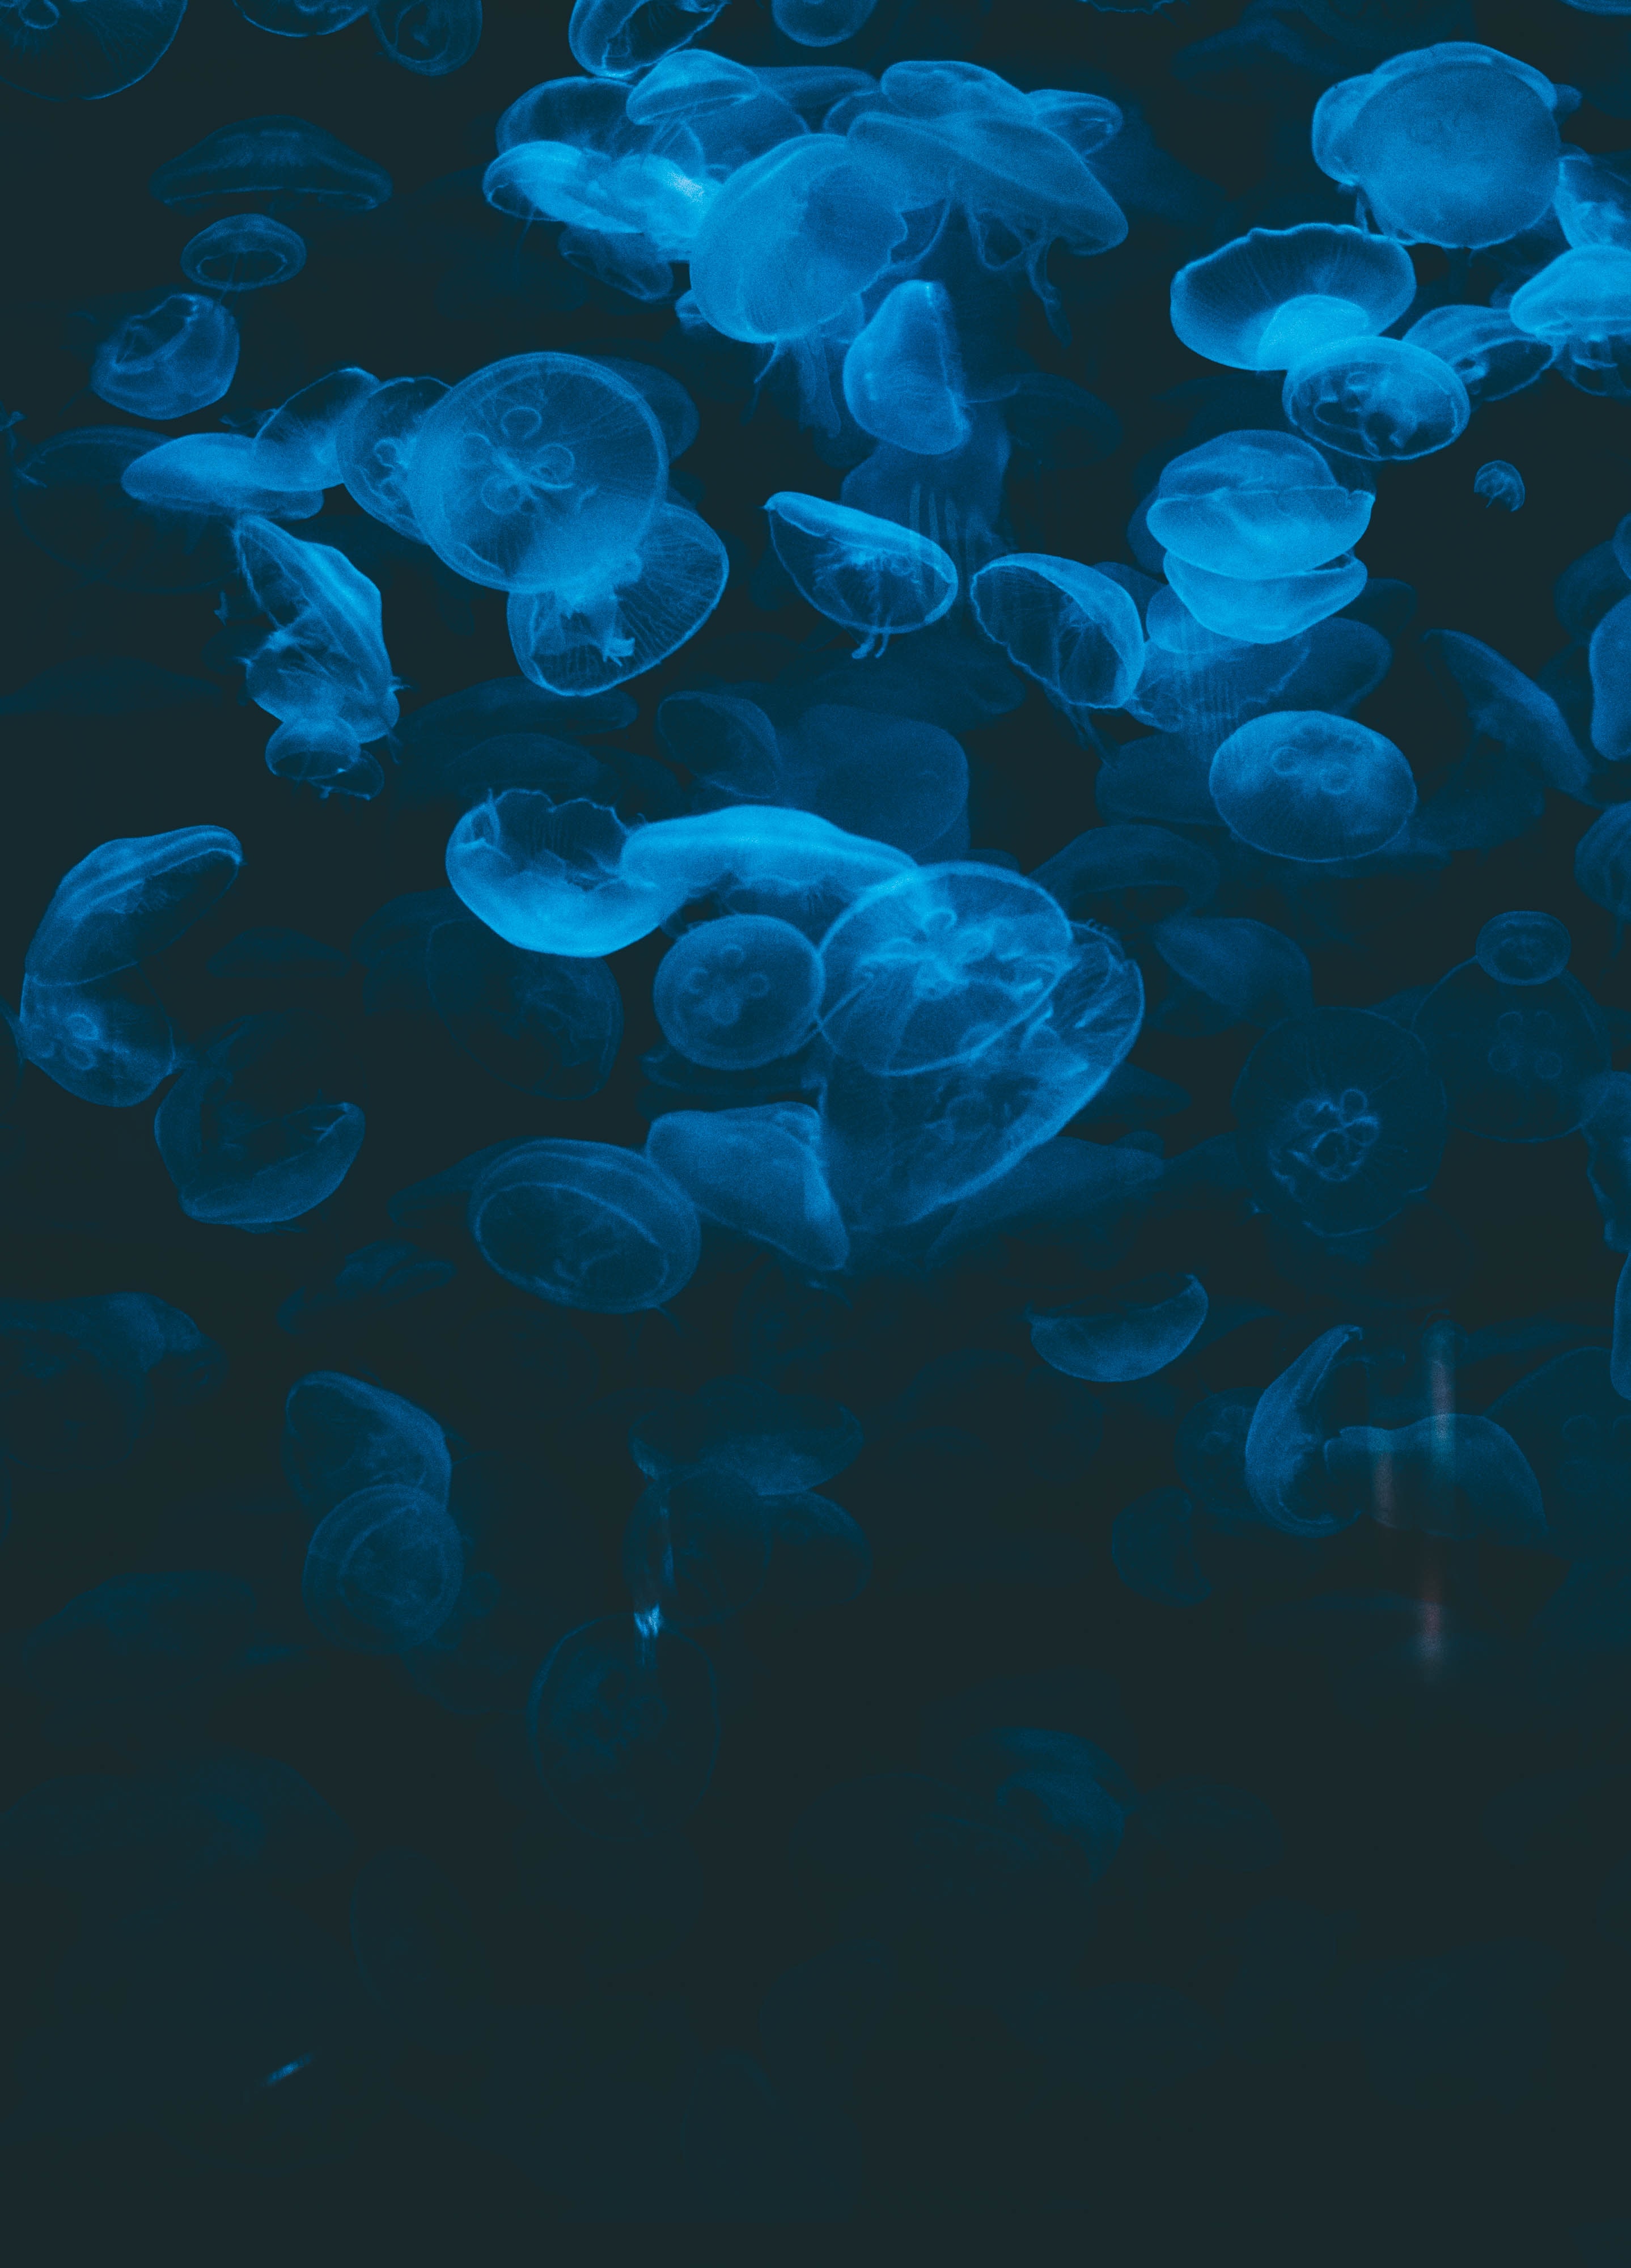 animals, jellyfish, blue, transparent, dark, under water, underwater